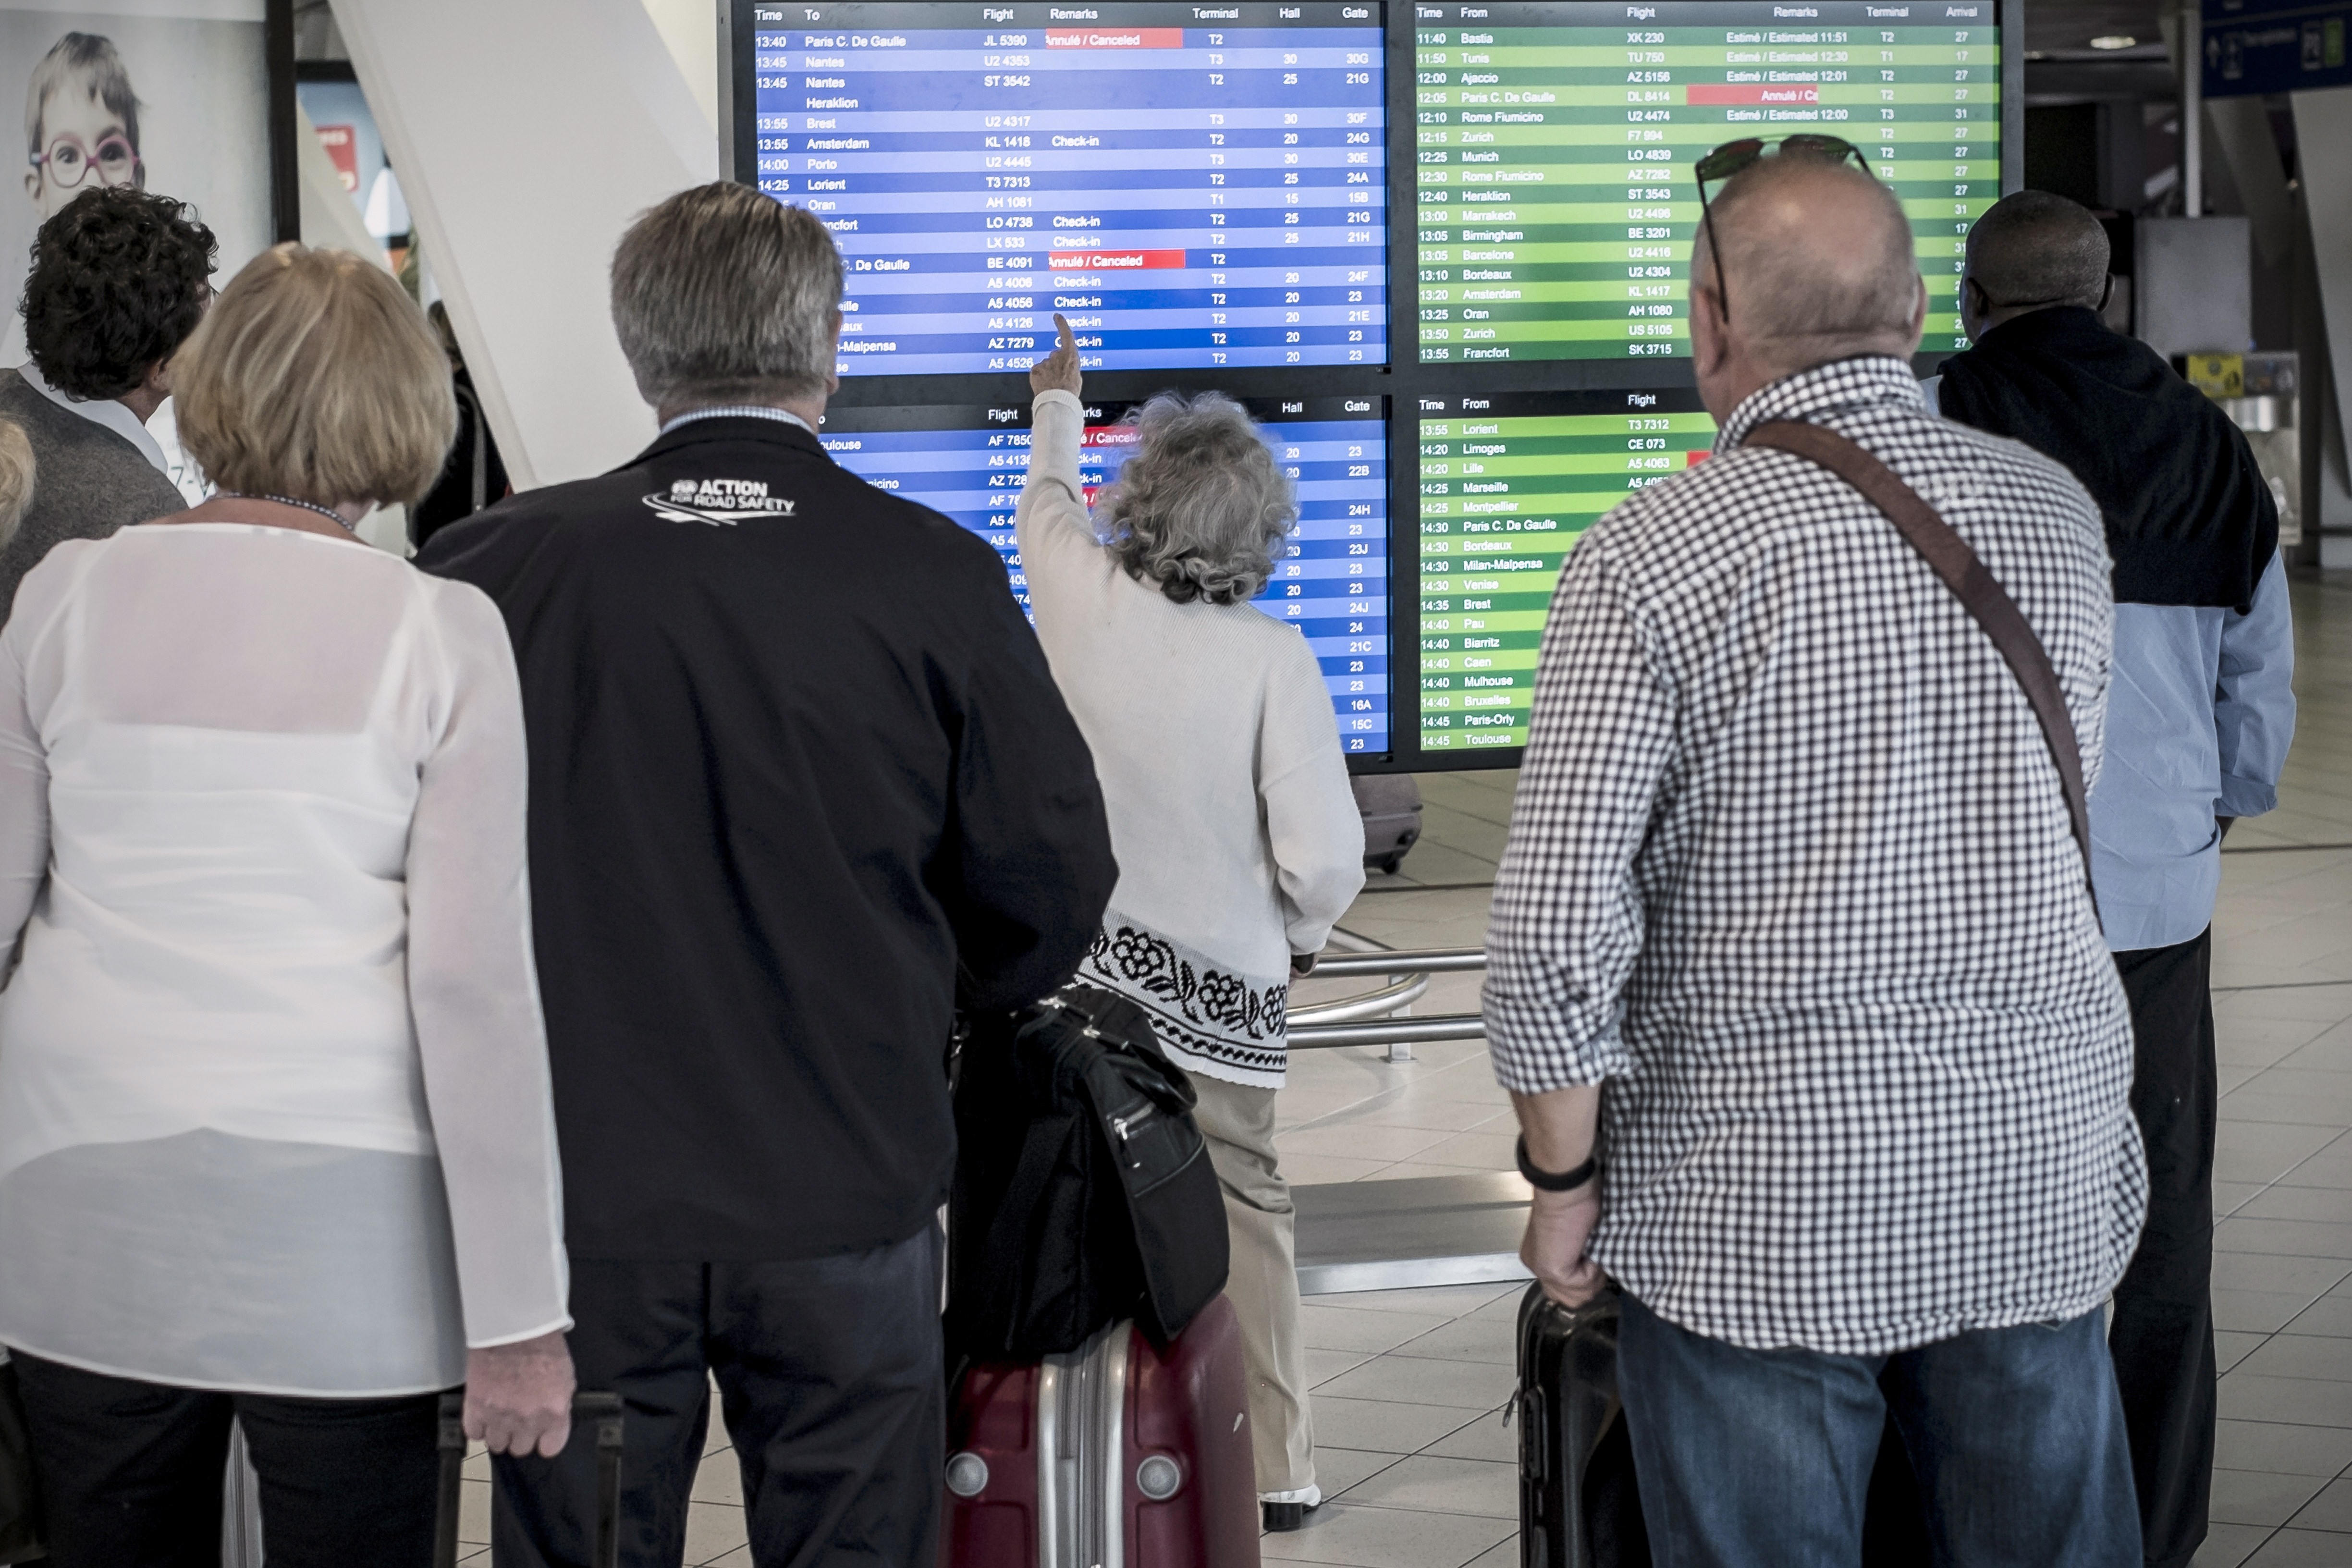 Air France Pilotenstreik ganze Woche ab Montag: Wie kann man umbuchen oder stornieren? Hotline und alle nötige Informationen